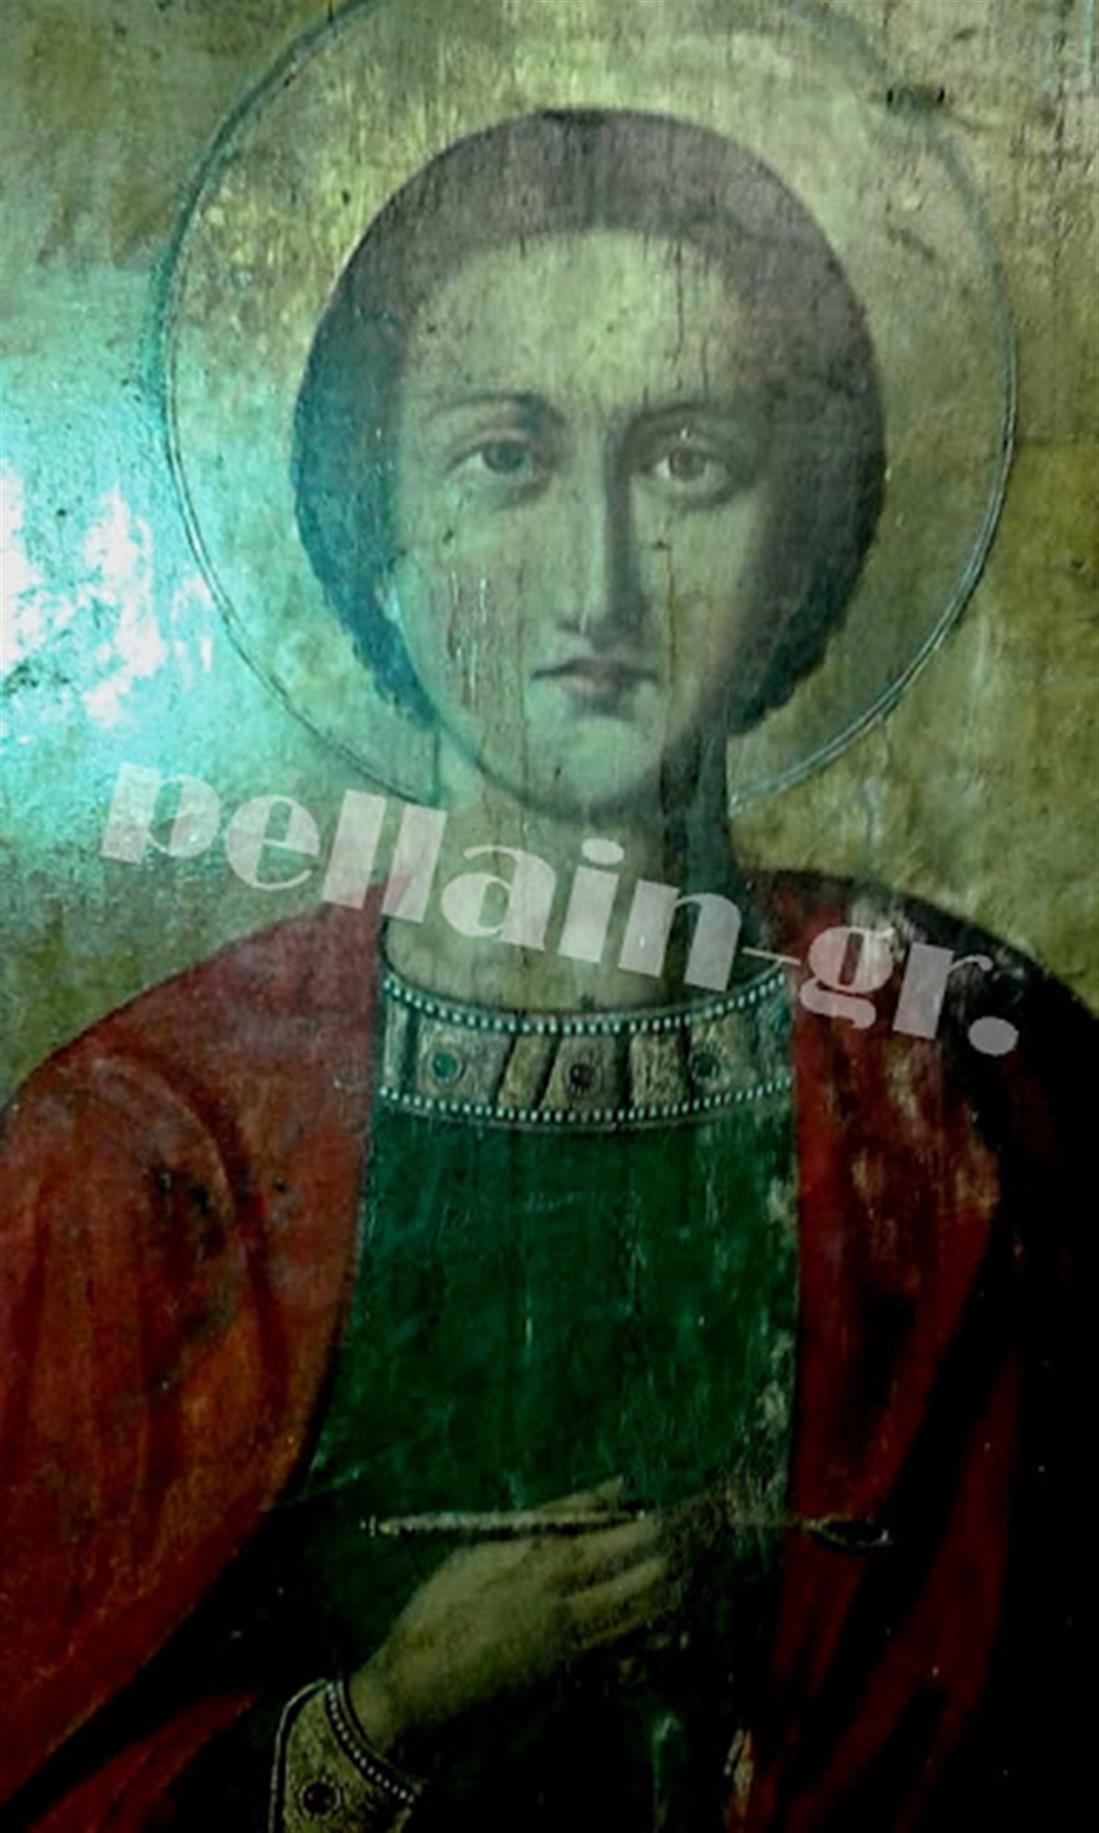 Ιερός Ναός - εικόνα - δάκρυα - Άγιος Παντελεήμονας - Αρσένι Πέλλας